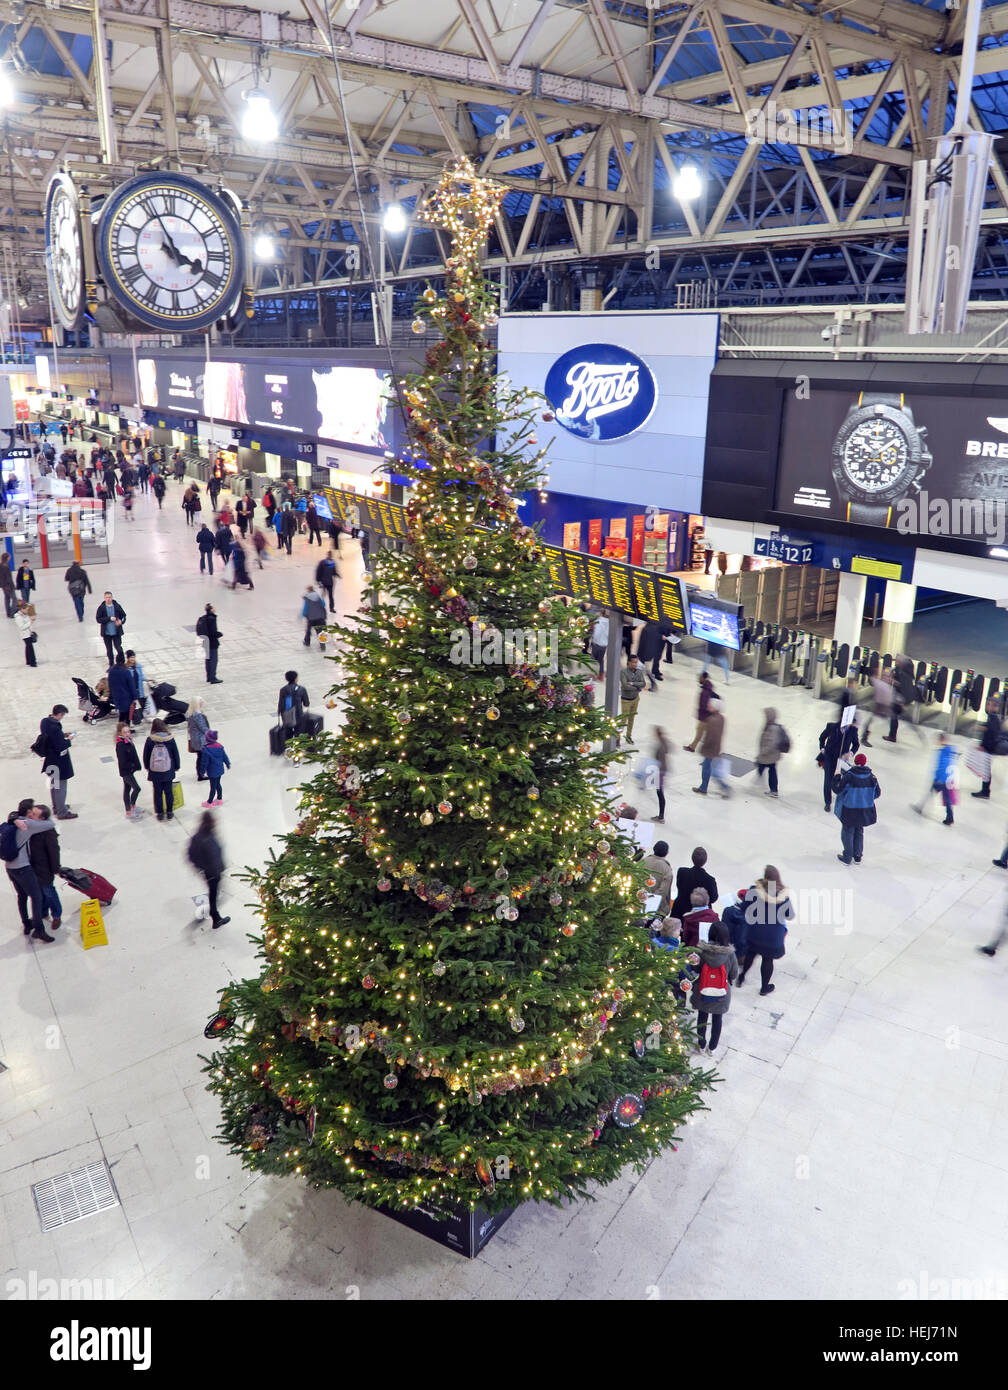 La gare de Waterloo, Londres à Noël,décembre, le centre de Londres, Angleterre Royaume-uni Banque D'Images